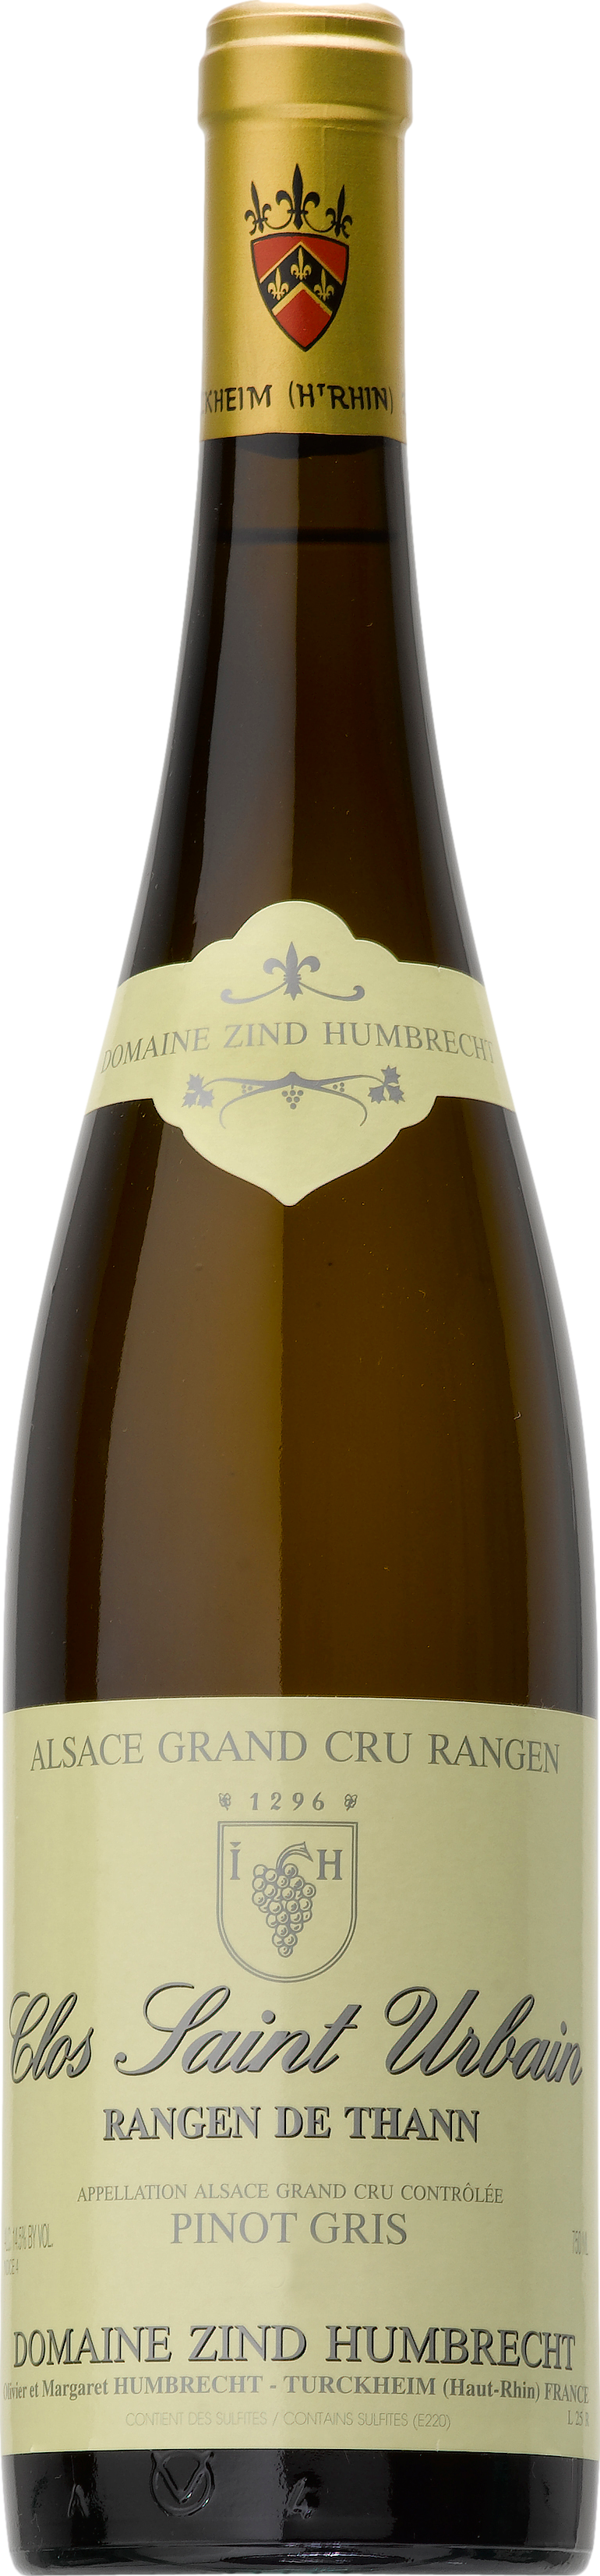 2016 günstig Kaufen-Domaine Zind-Humbrecht Pinot Gris Grand Cru Rangen de Thann Clos Saint Urbain 2016. Domaine Zind-Humbrecht Pinot Gris Grand Cru Rangen de Thann Clos Saint Urbain 2016 . 